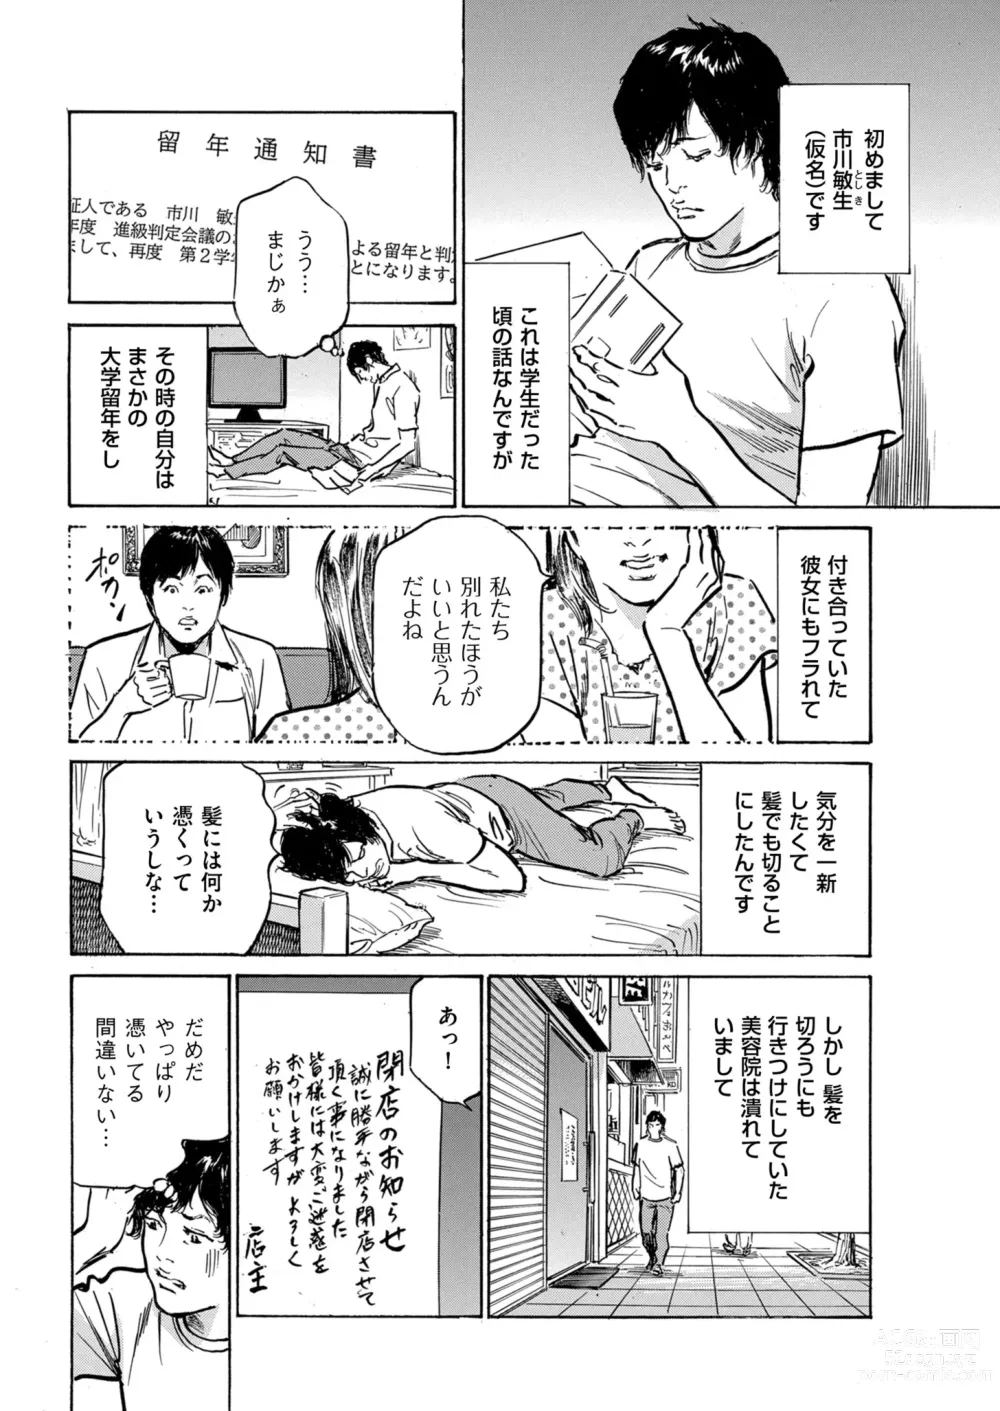 Page 211 of manga Zutto Himitsu ni Shiteita Ano Koto Zenbu Oshiemasu 14 episodes